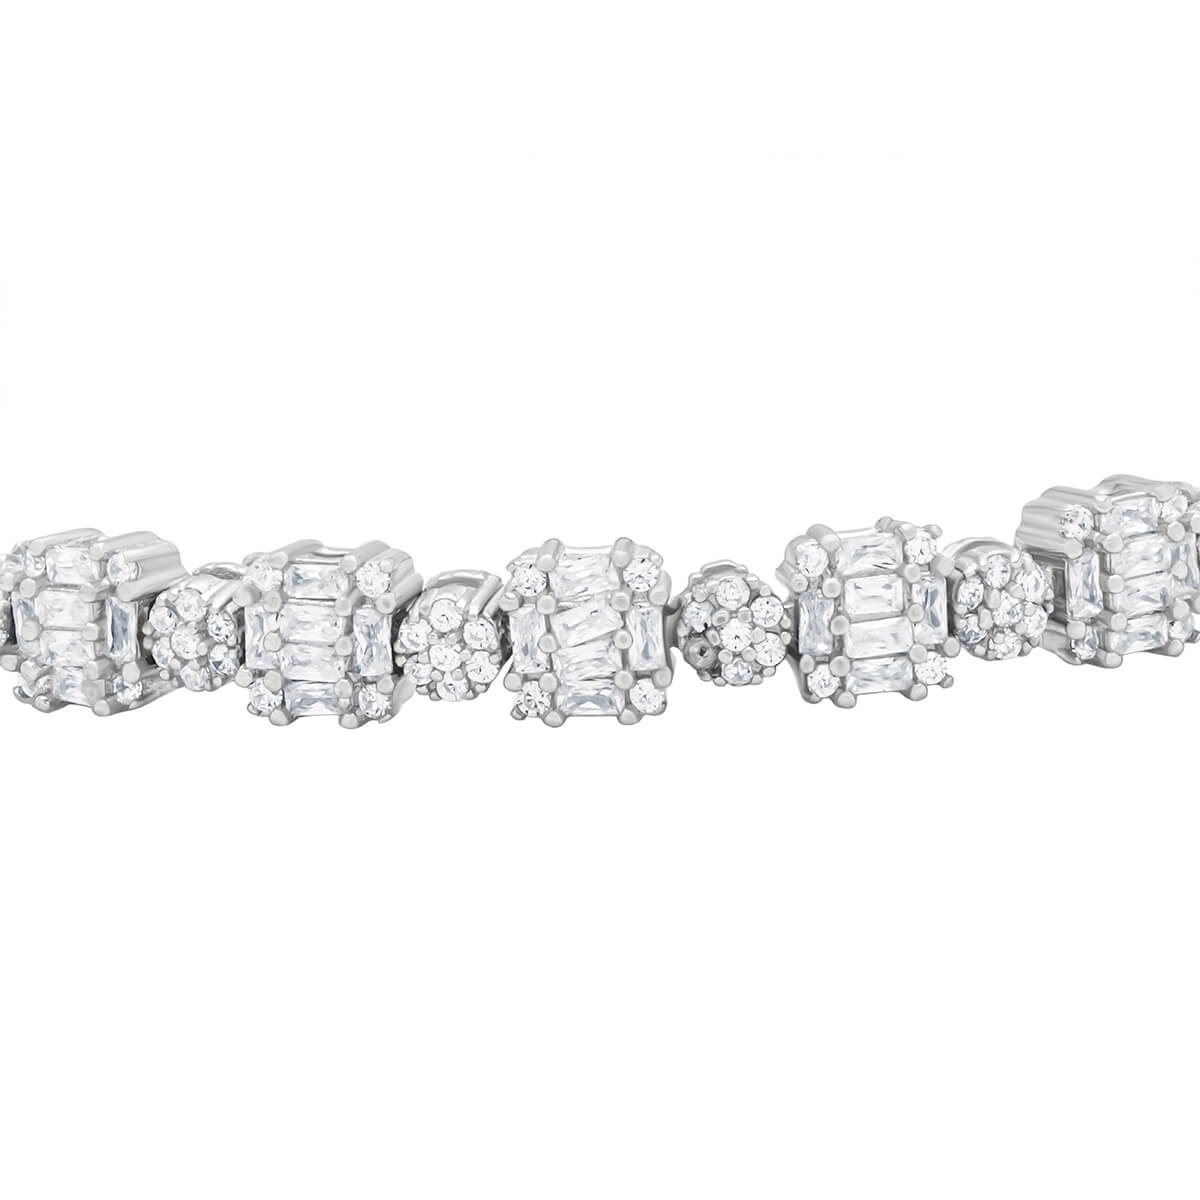 Silver Studded Bracelet